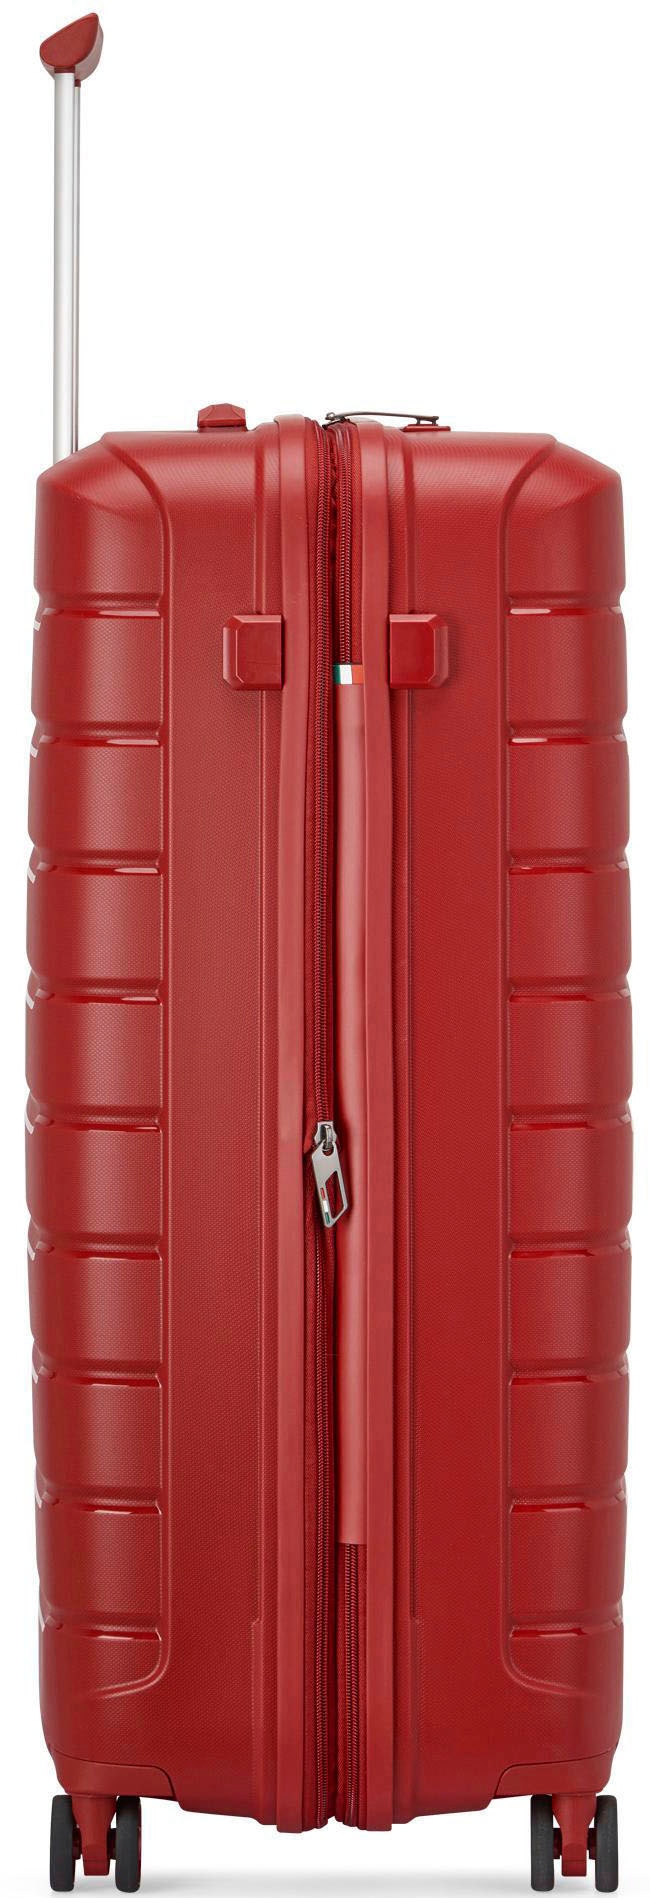 RONCATO Hartschalen-Trolley »B-FLYING, 76 cm, rot«, 4 Rollen, Hartschalen-Koffer Reisegepäck mit Volumenerweiterung und TSA Schloss